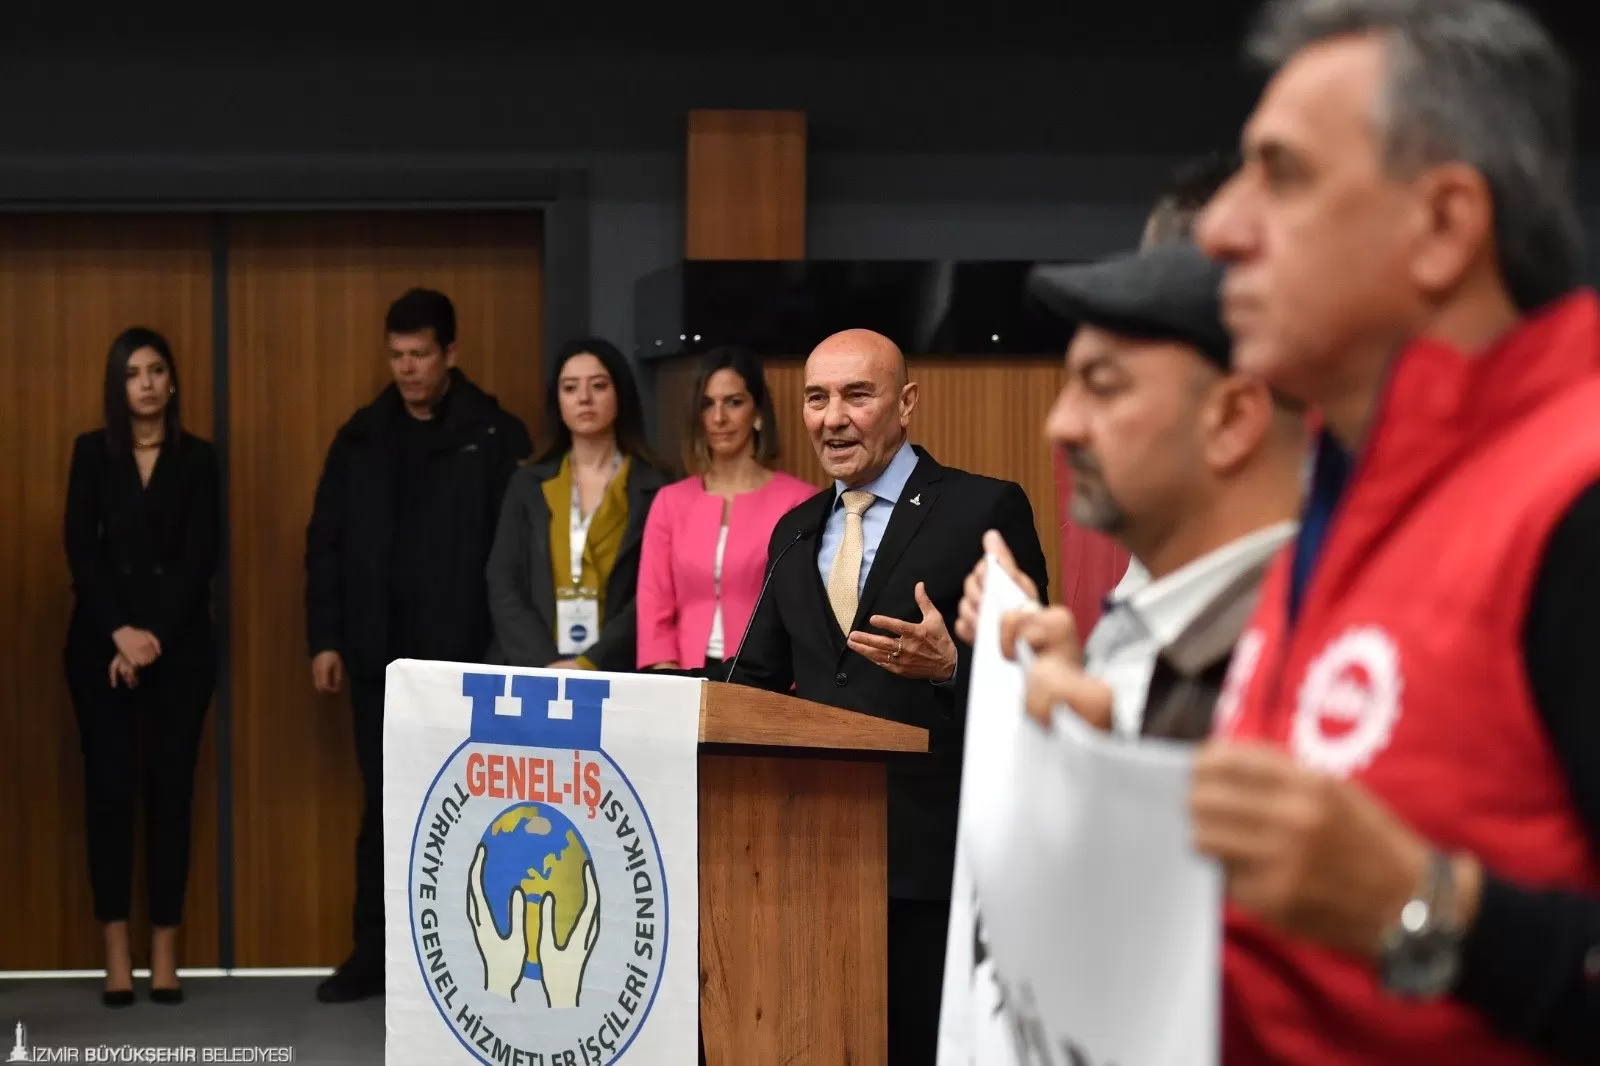 Egeşehir A.Ş.'de 27 işçiyi kapsayan ilk toplu iş sözleşmesi imzalandı. İzmir Büyükşehir Belediyesi bünyesindeki tüm şirketlerde sendika örgütlenmesi tamamlanmış oldu.